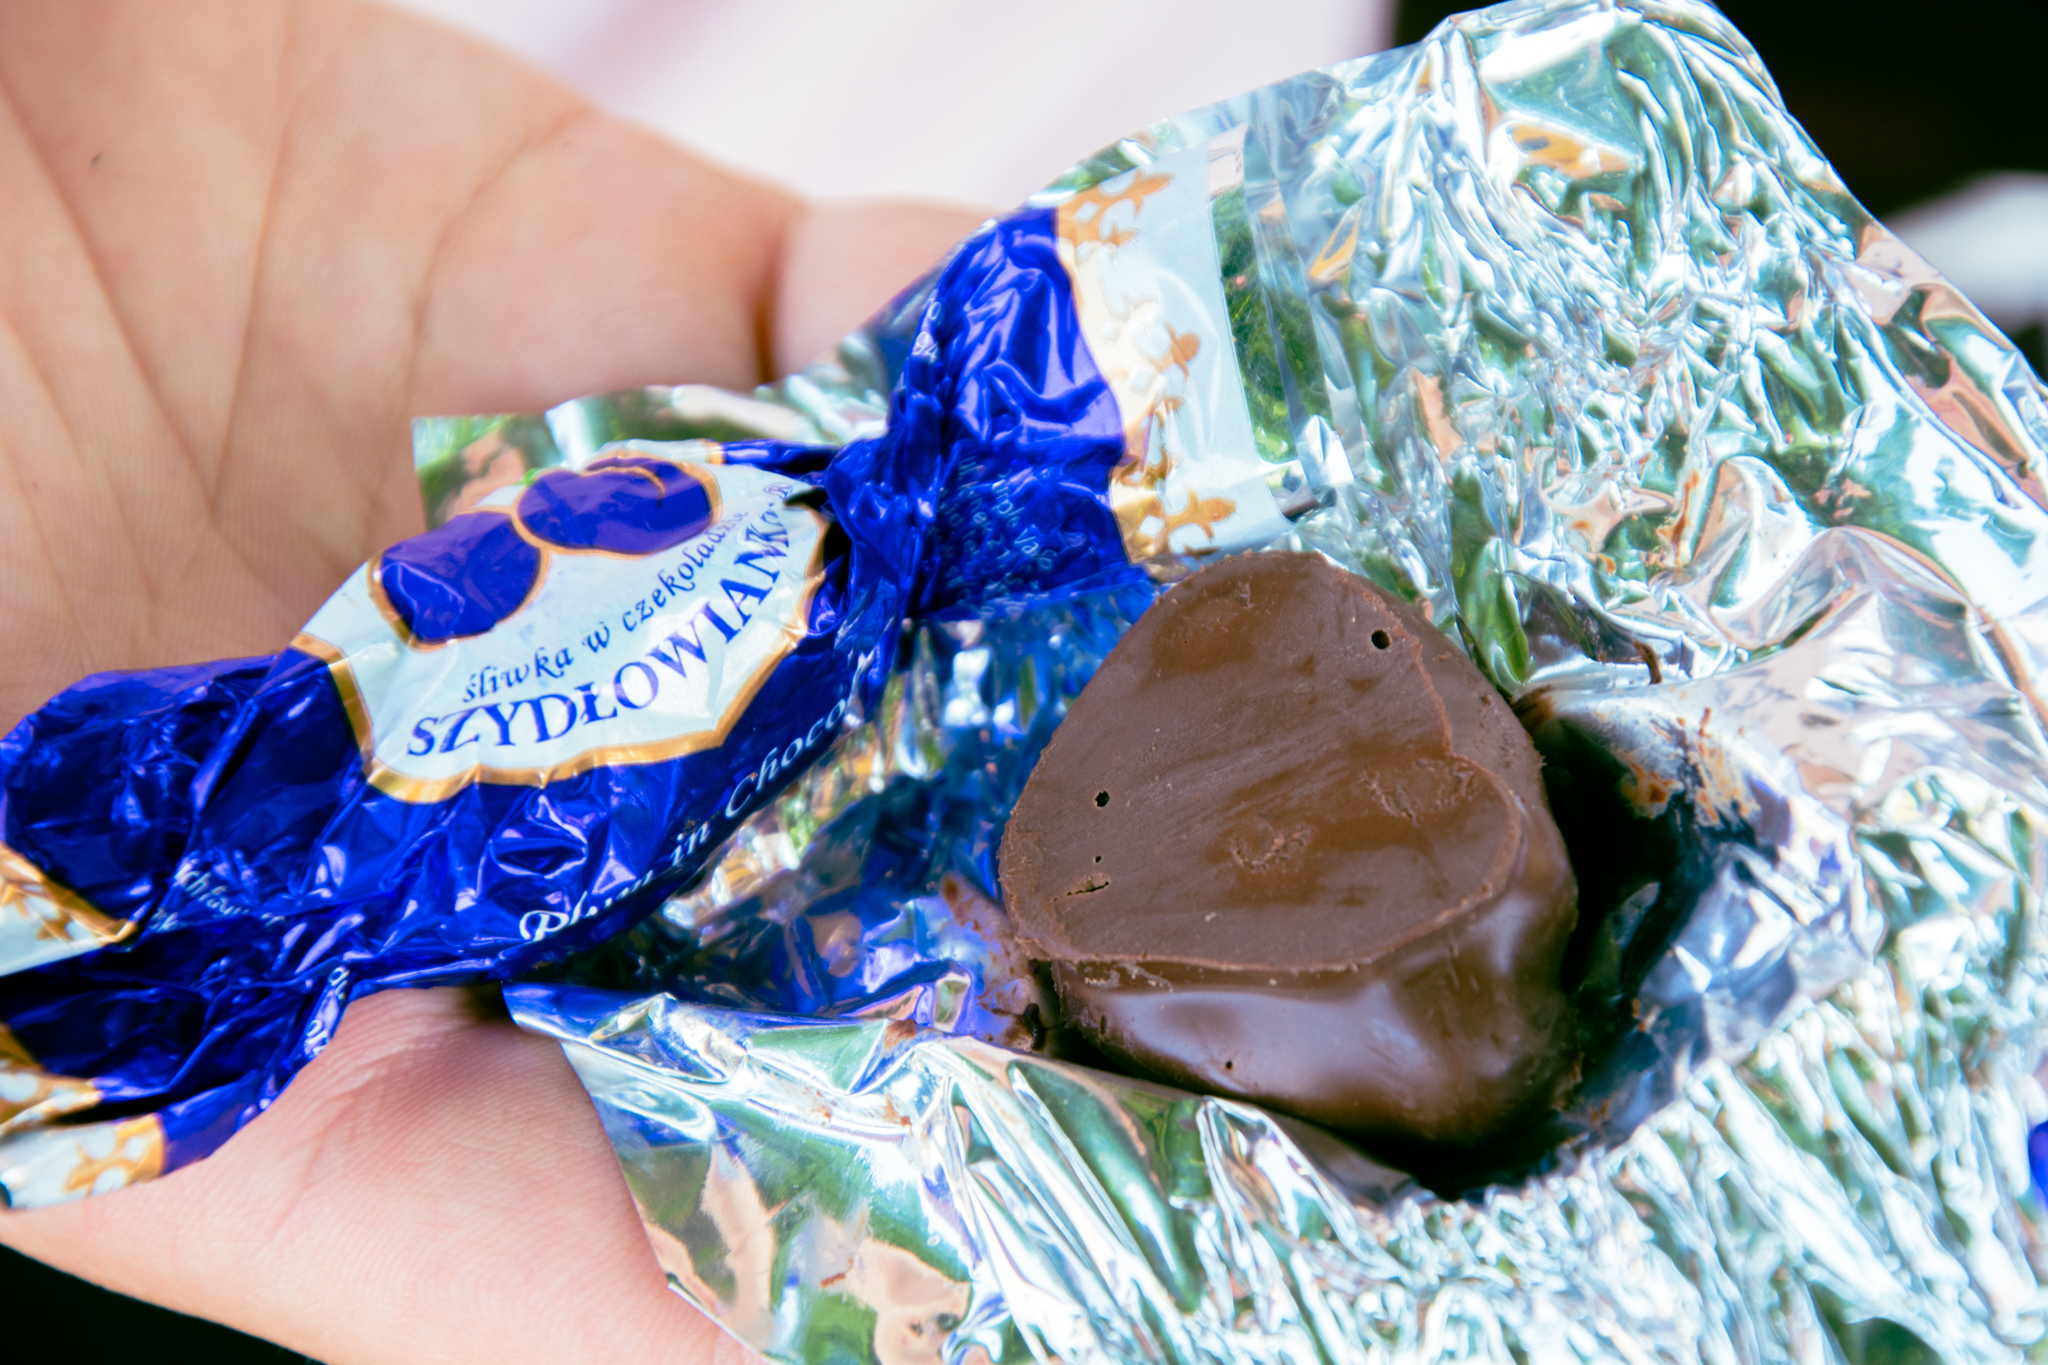 Cukierek śliwka w czekoladzie od firmy Szydłowianka, rozpakowany.